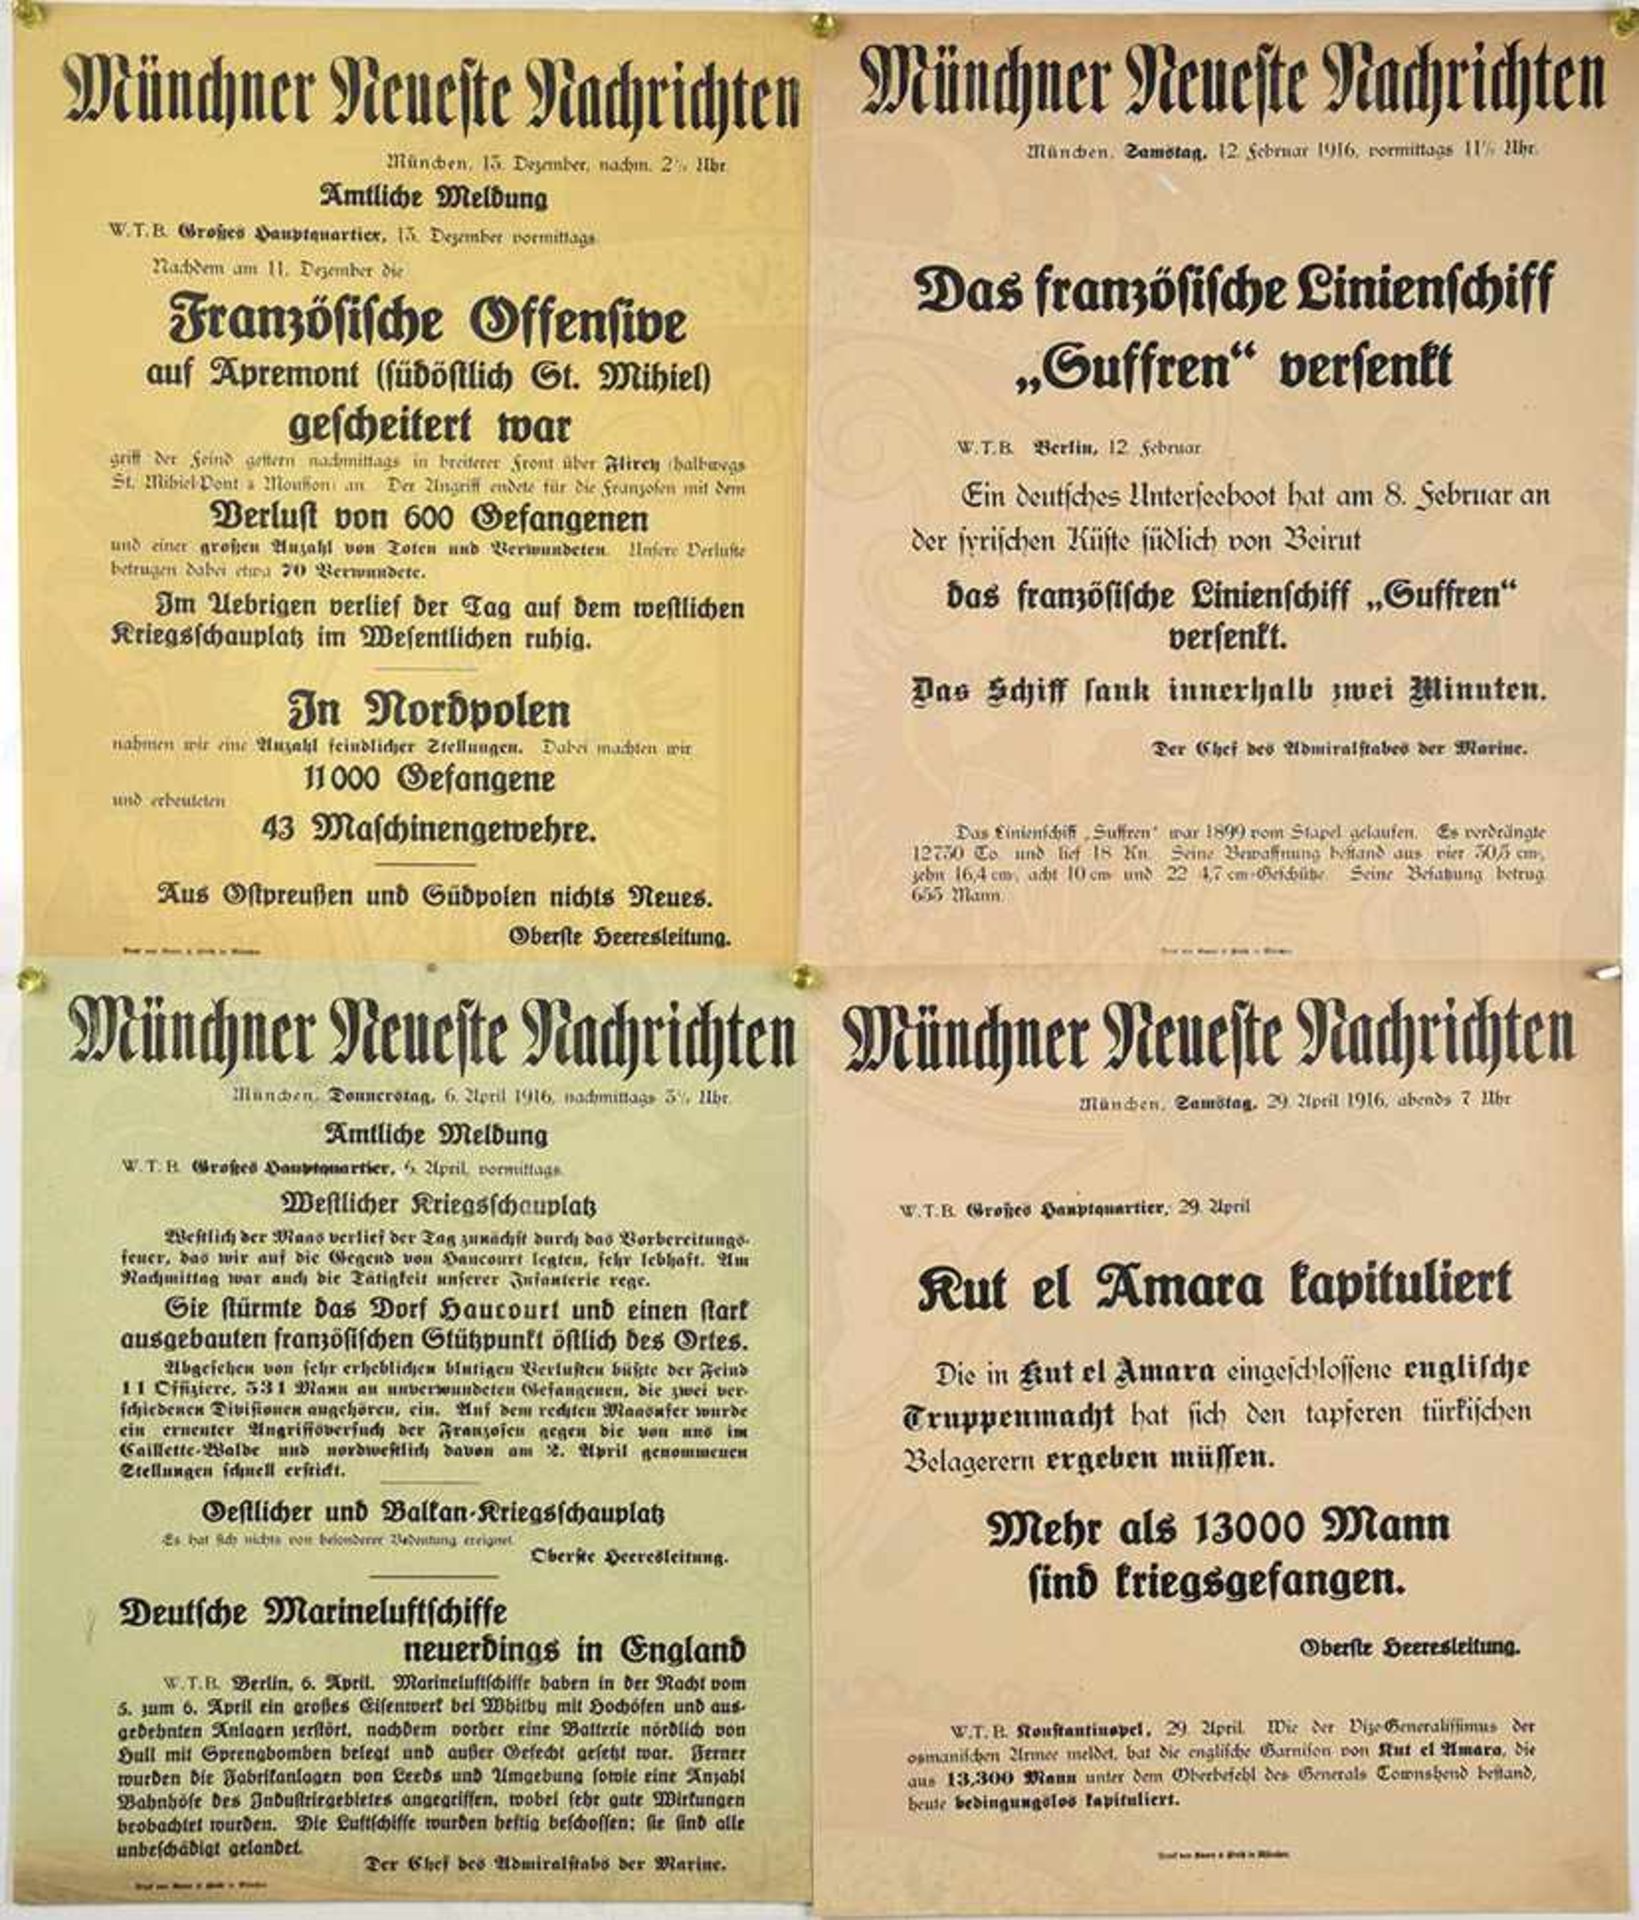 52 NACHRICHTEN-ANSCHLÄGE, meist Münchner Neueste Nachrichten, Juli 1914-Dez. 1916, dabei: Festung